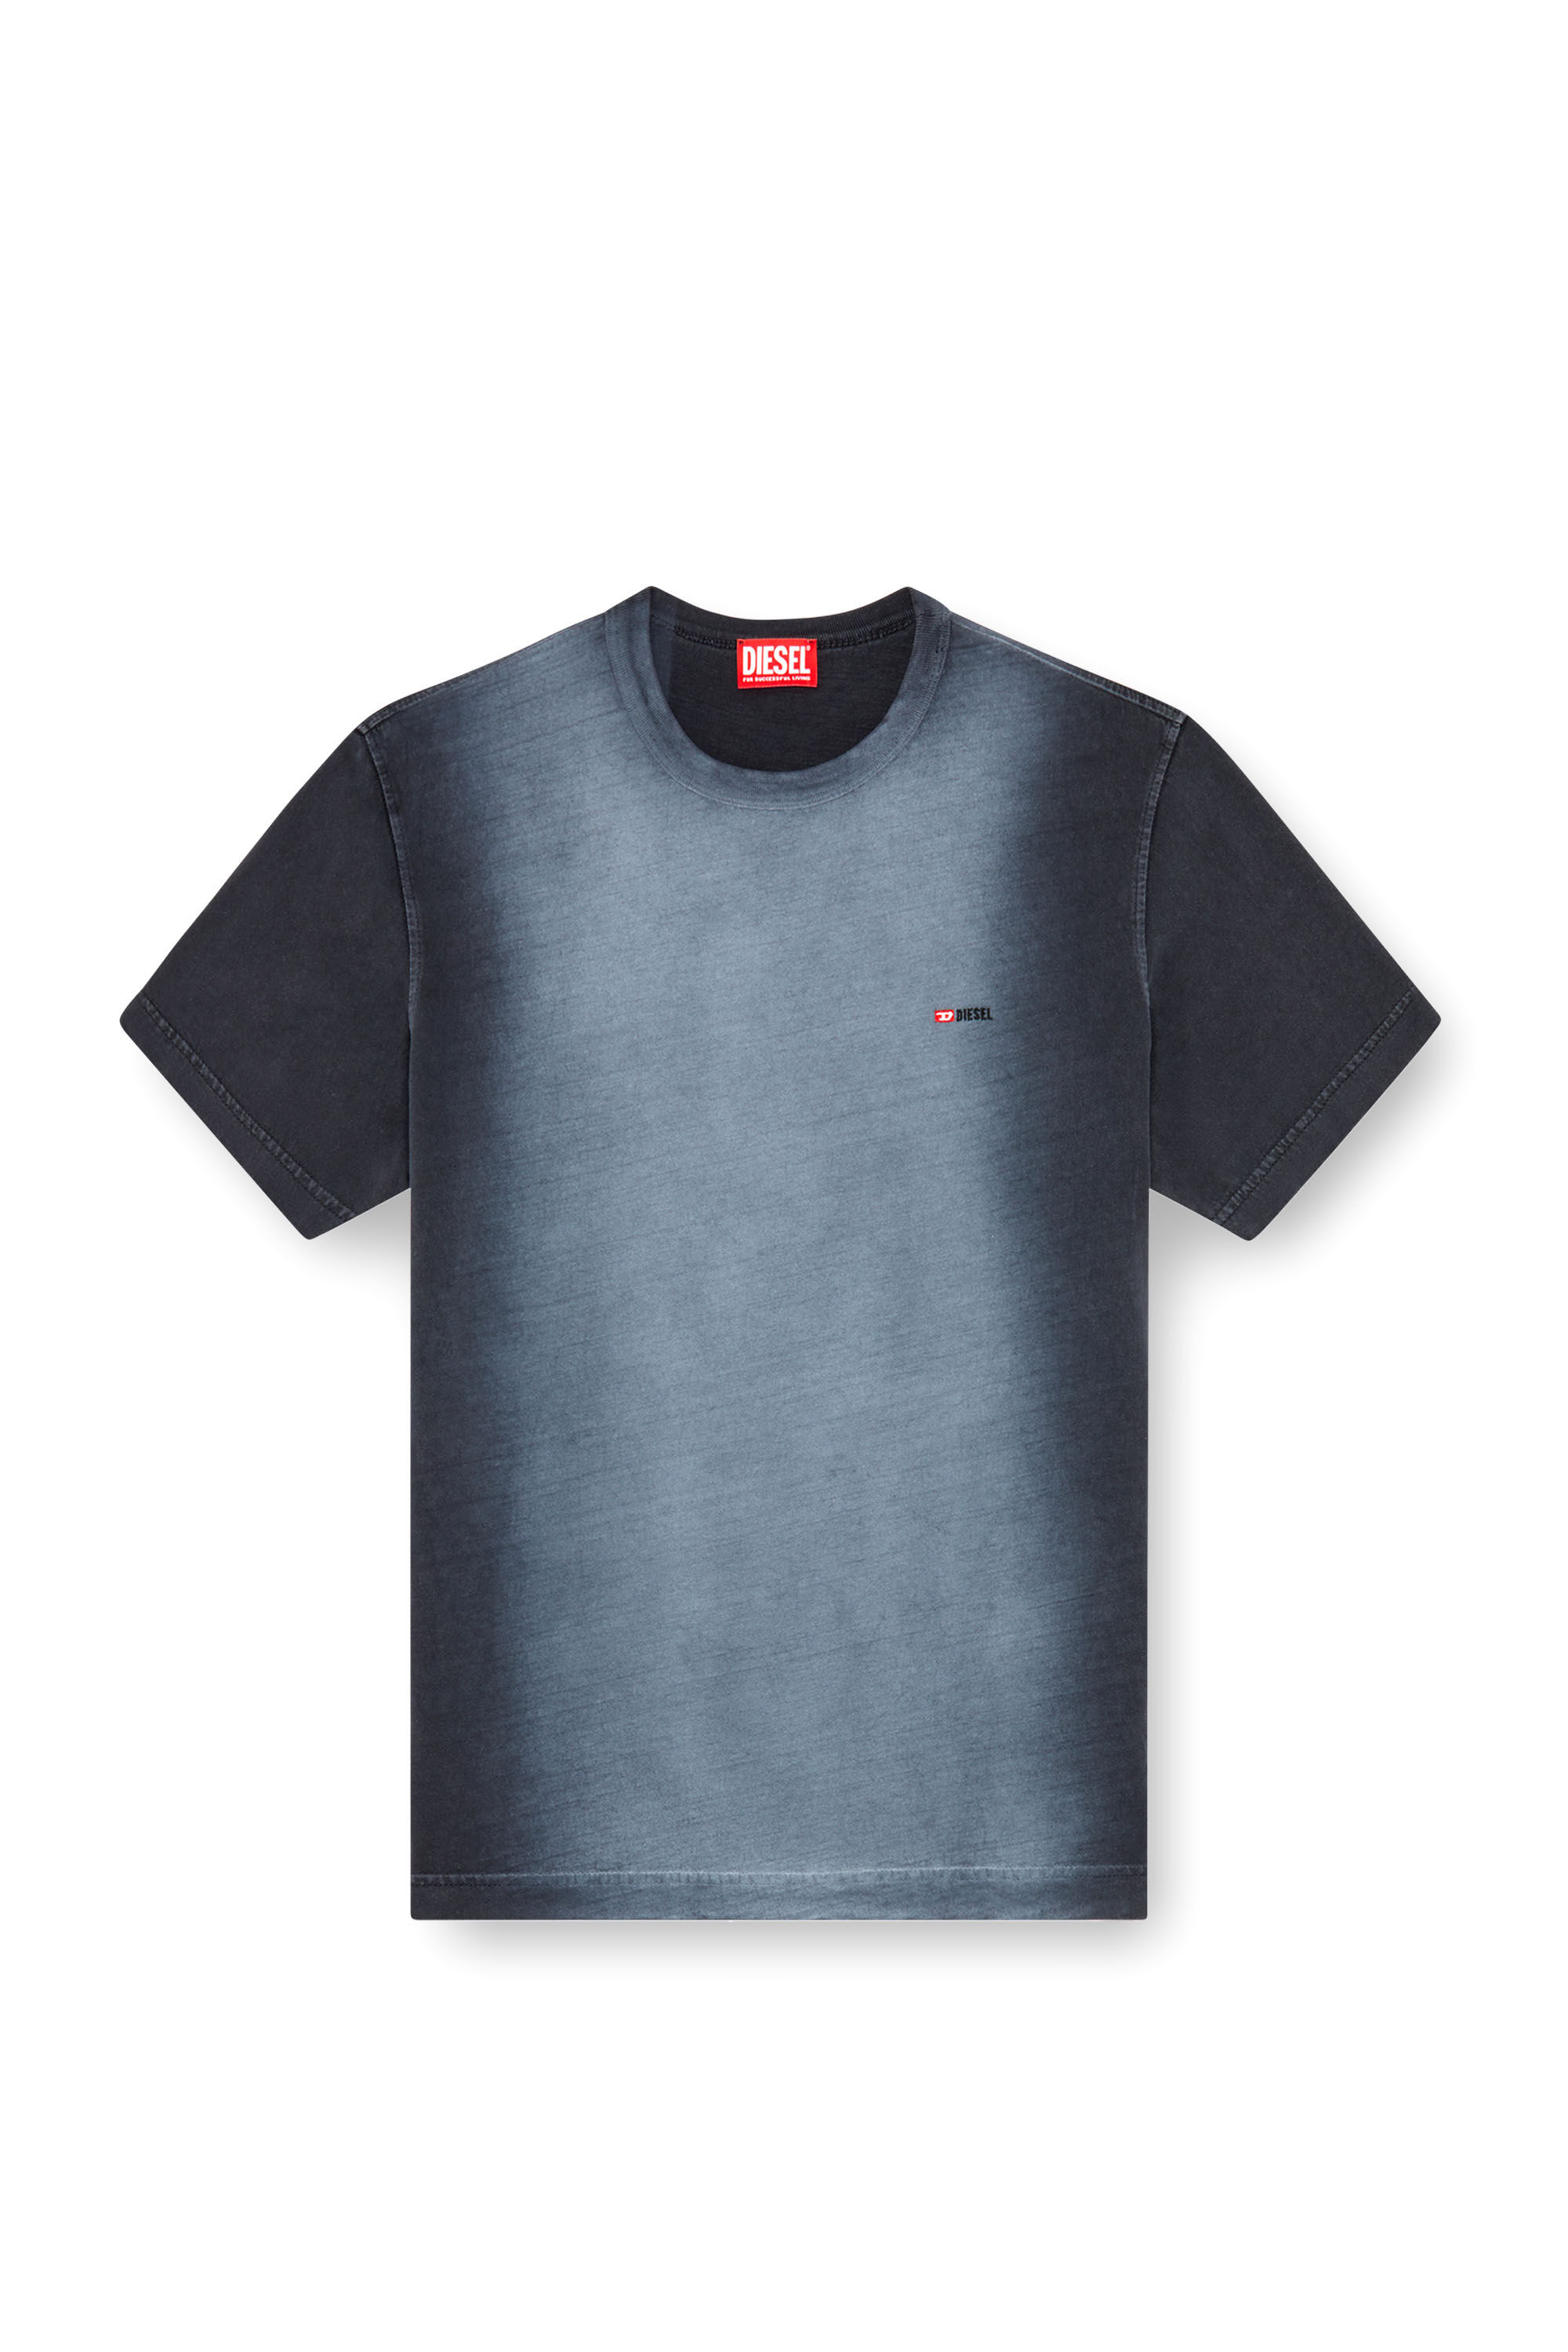 Diesel - T-ADJUST-Q2, Man T-shirt in sprayed cotton jersey in Black - Image 2